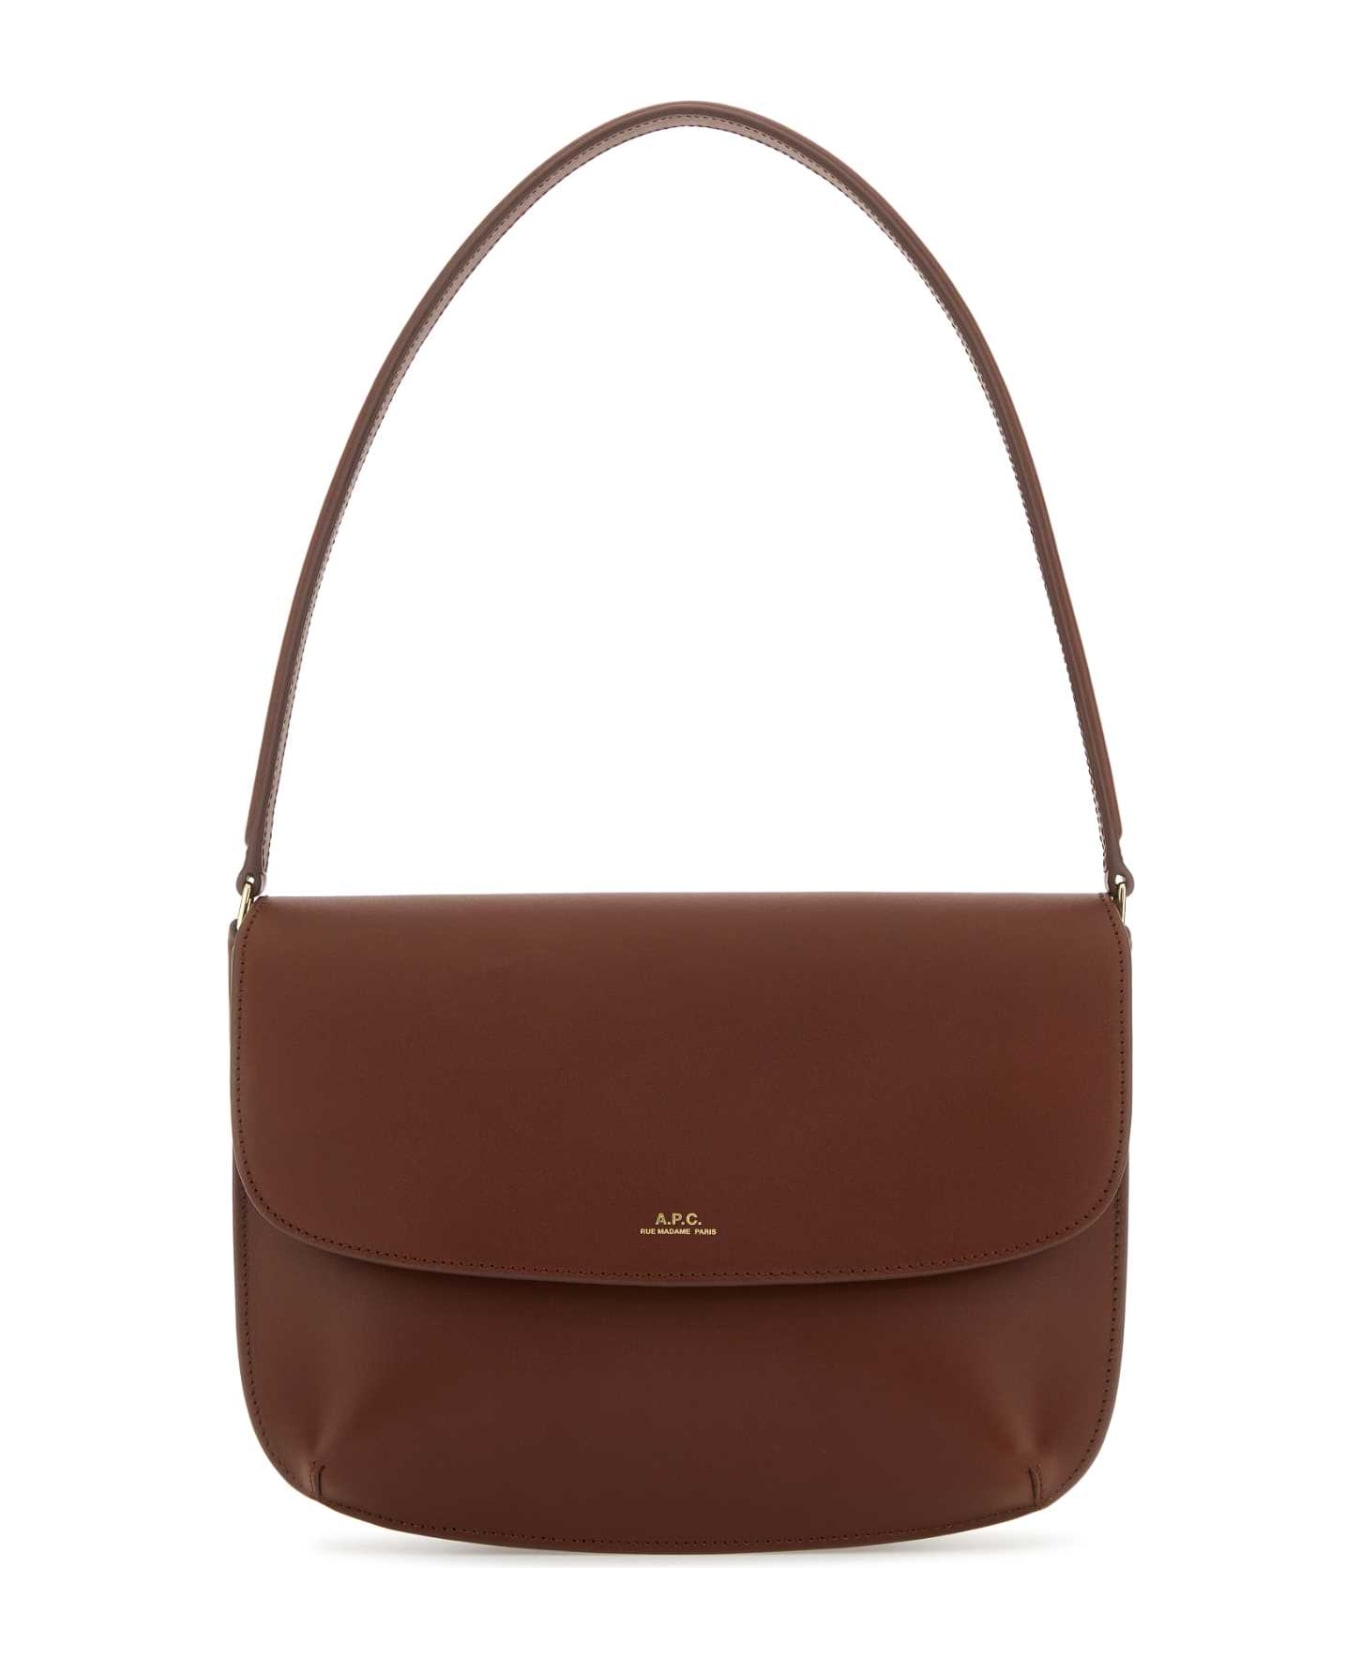 A.P.C. Brown Leather Sara Shoulder Bag - CAD トートバッグ